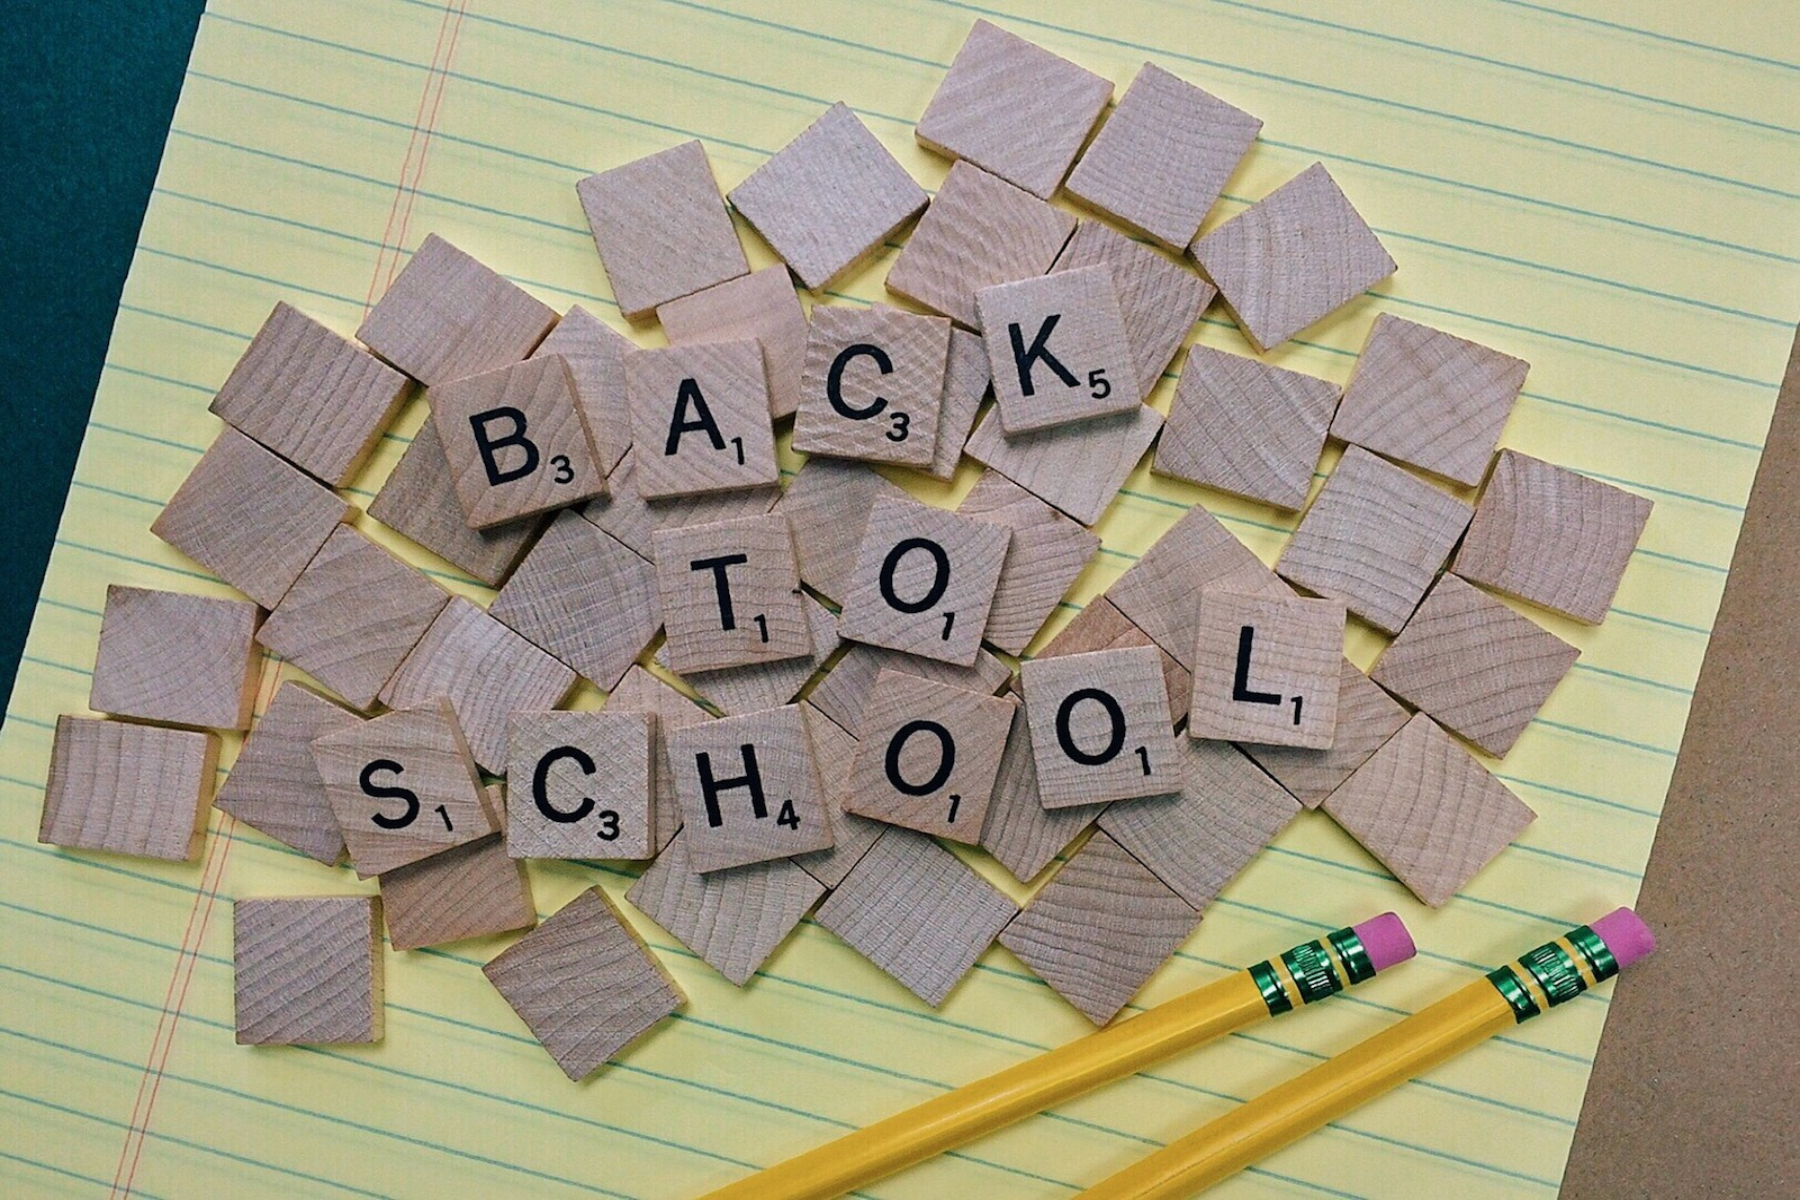 Σχολείο: Τρόποι για να οργανωθείτε για την επιστροφή στο σχολείο